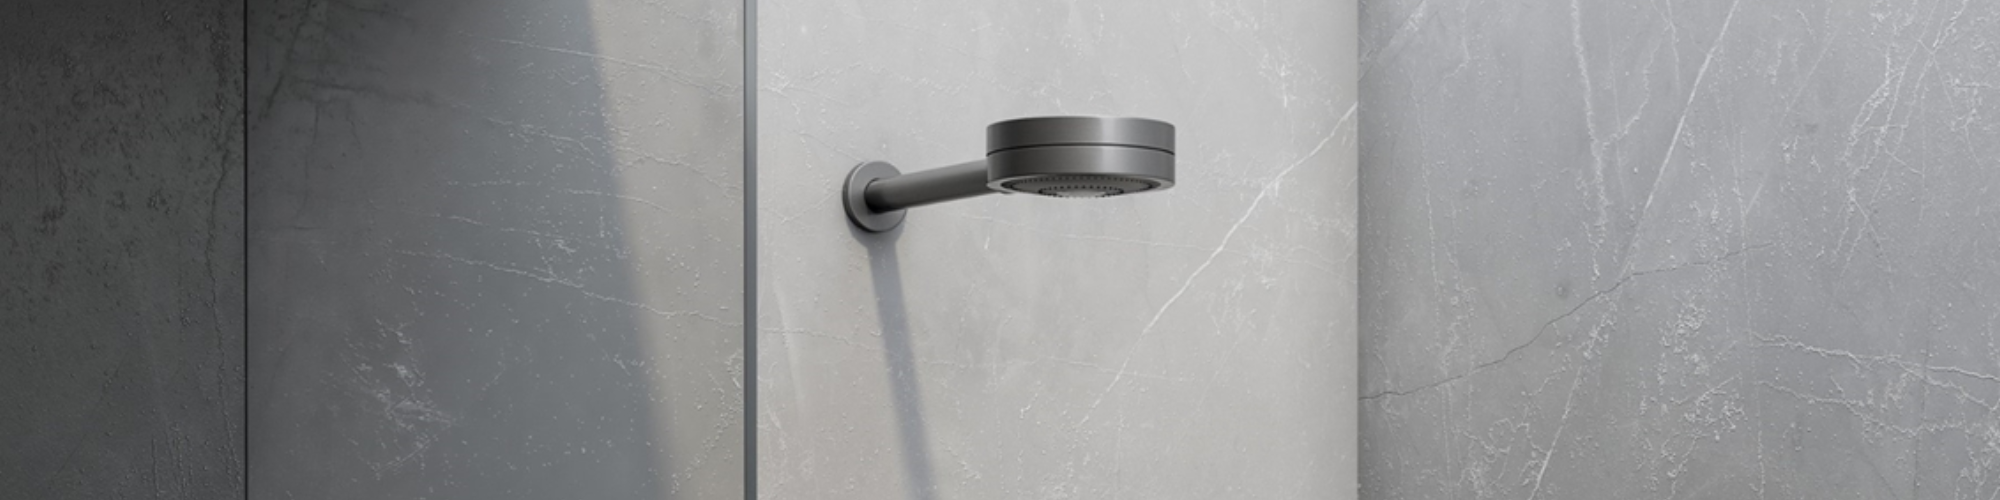 Transforme seu banho com o chuveiro novo technoshower grafite escovado da Docol